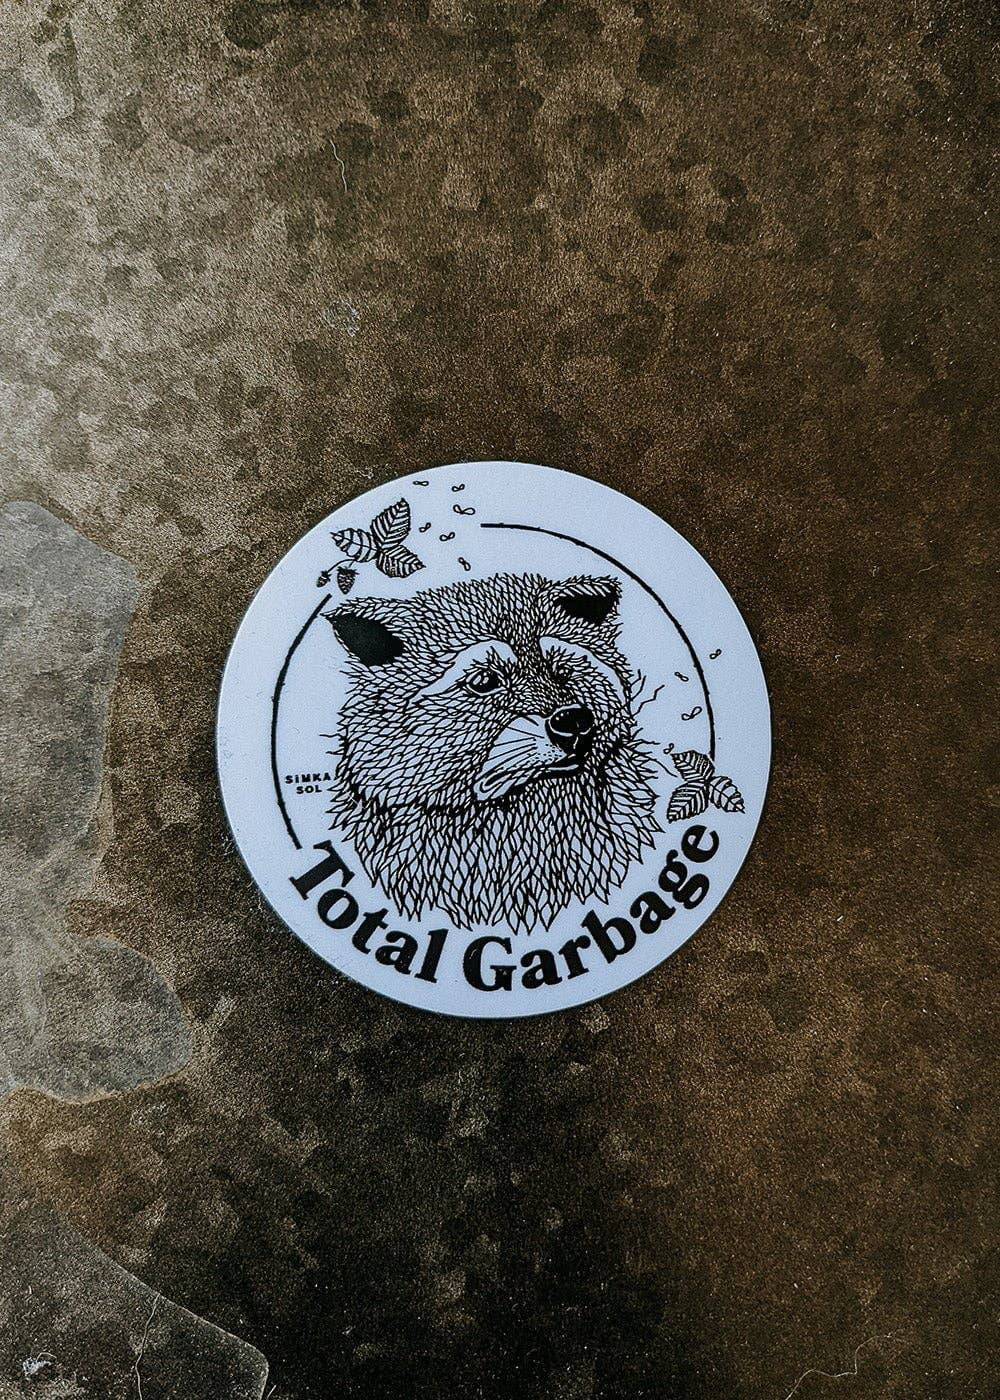 Total Garbage - 3" Vinyl Sticker